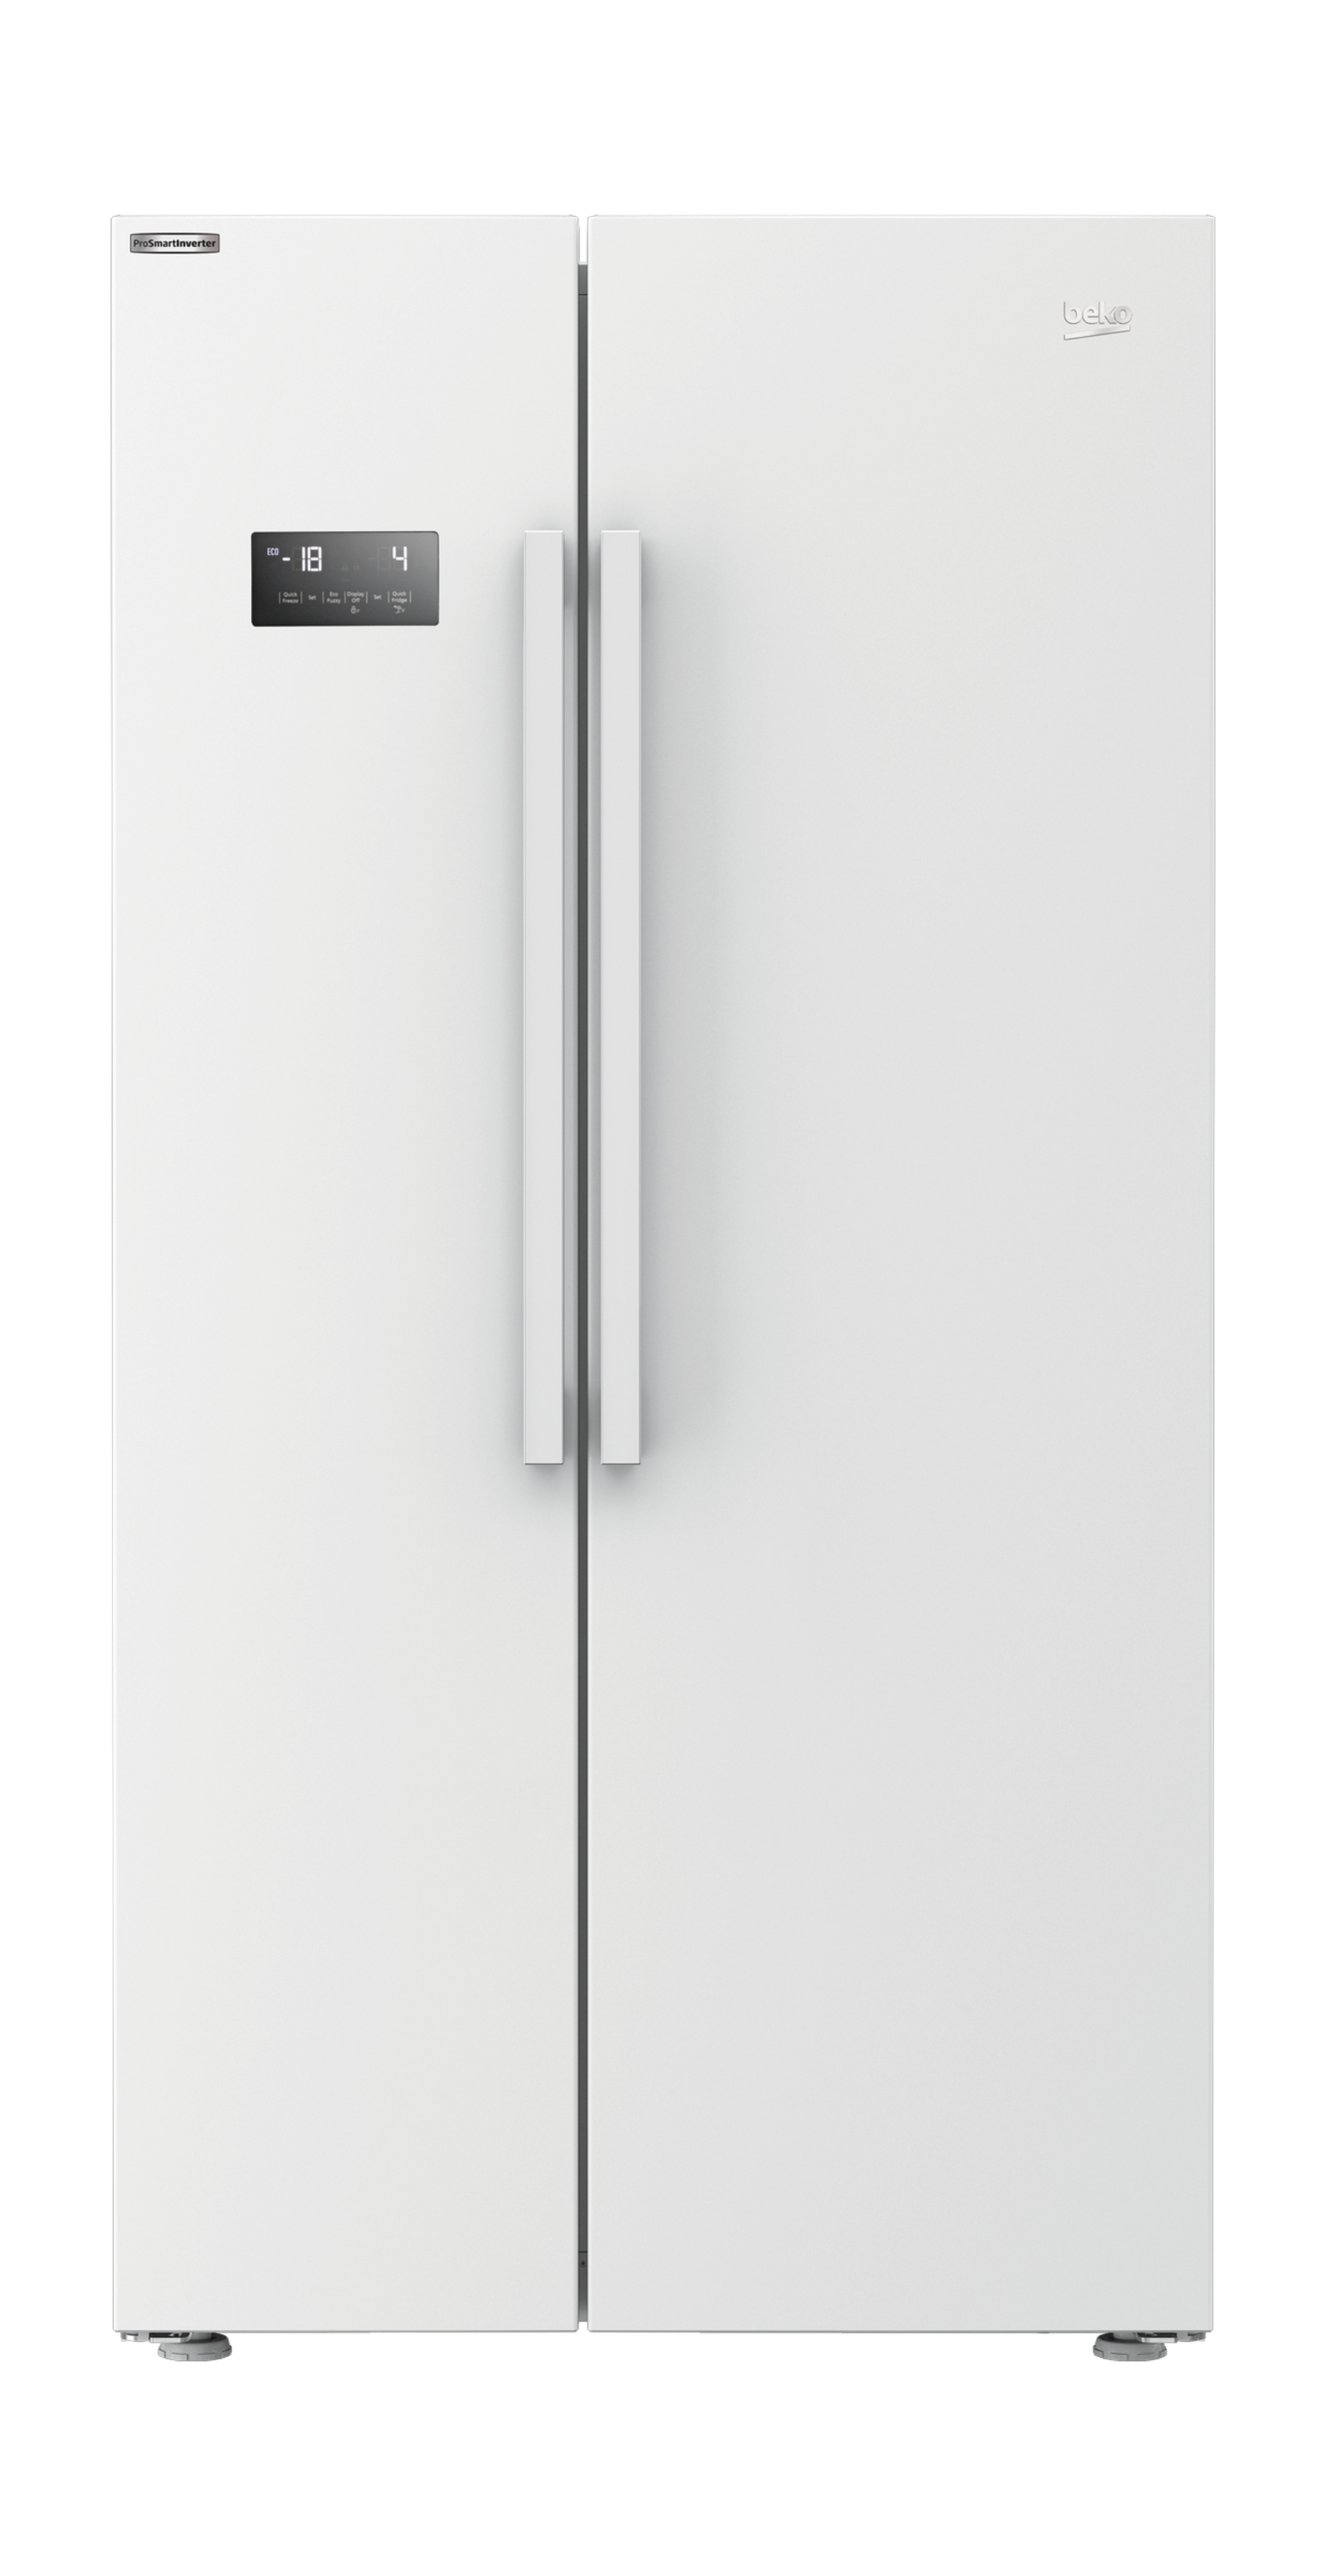 ثلاجة بيكو ببابين متجاورين  – 24.5قدم 640 لتر – أبيض (GN170110W)